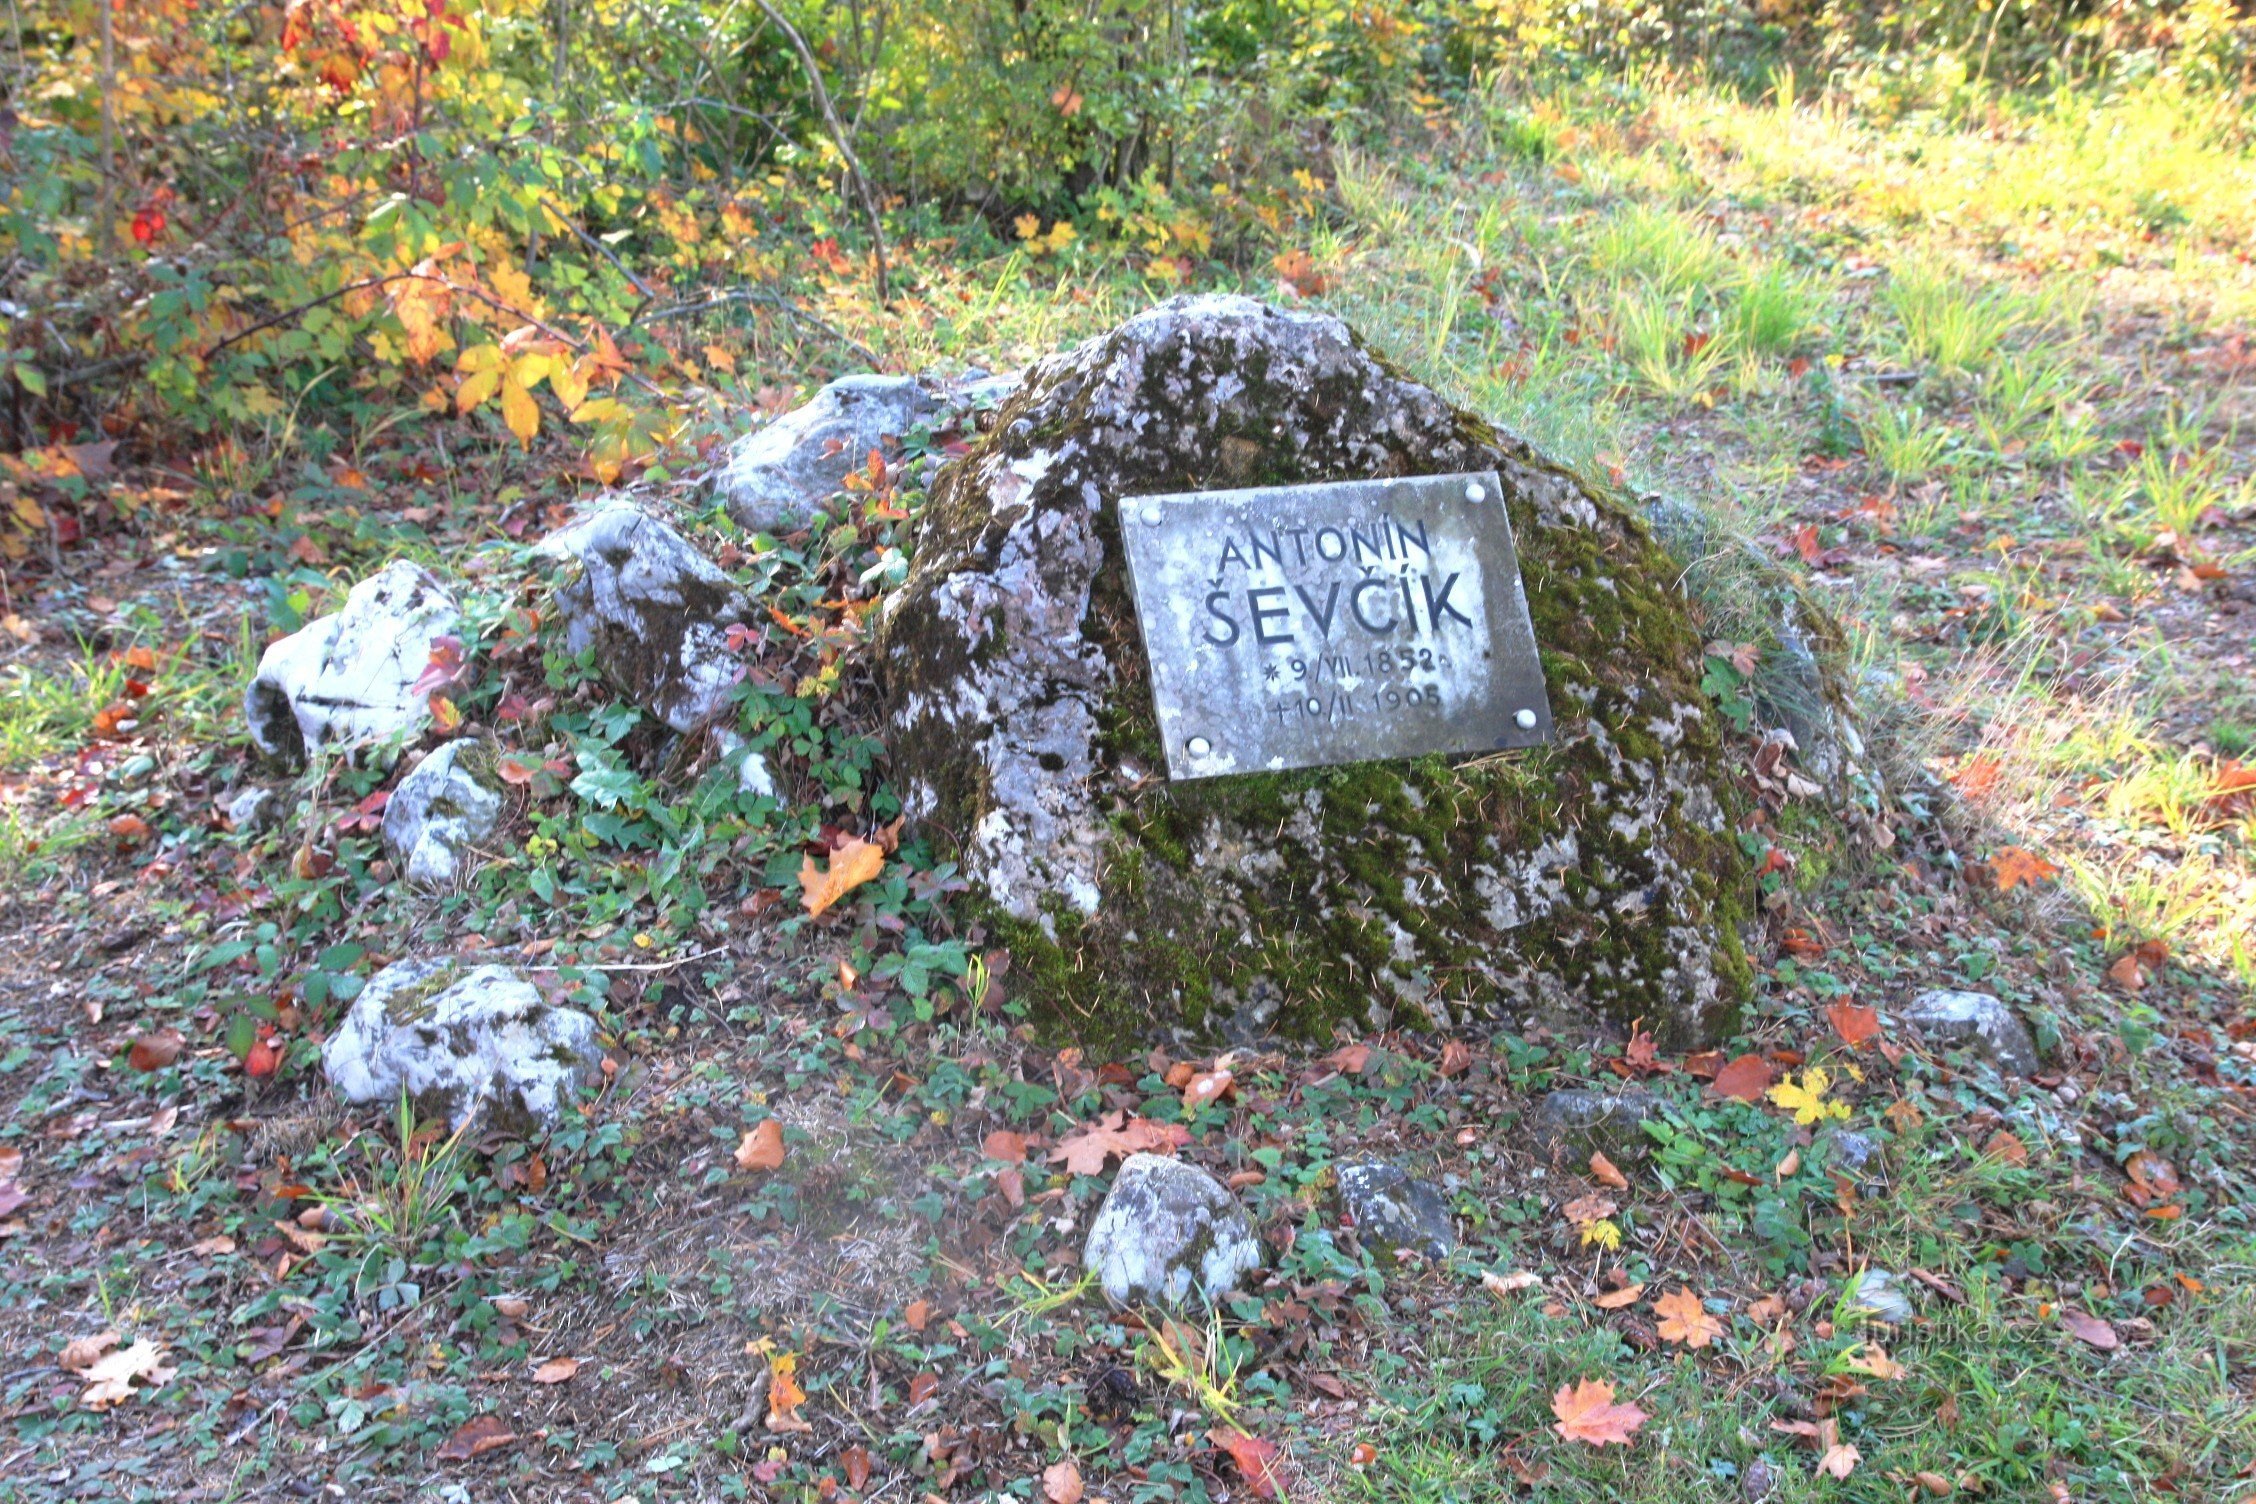 El viaje de Schatt comienza en el monumento a A. Ševčík